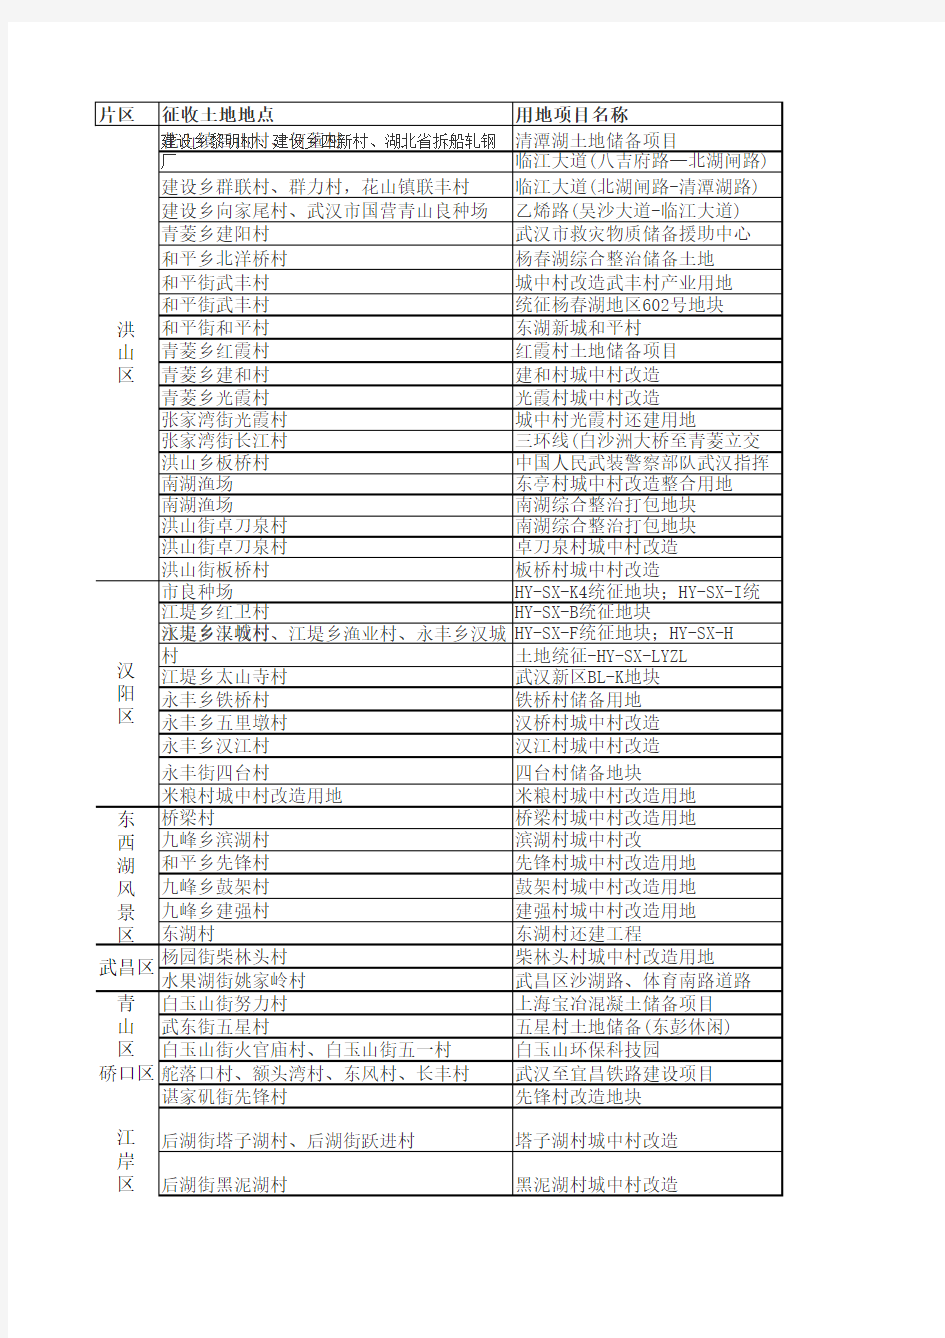 2013年武汉城中村改造名单